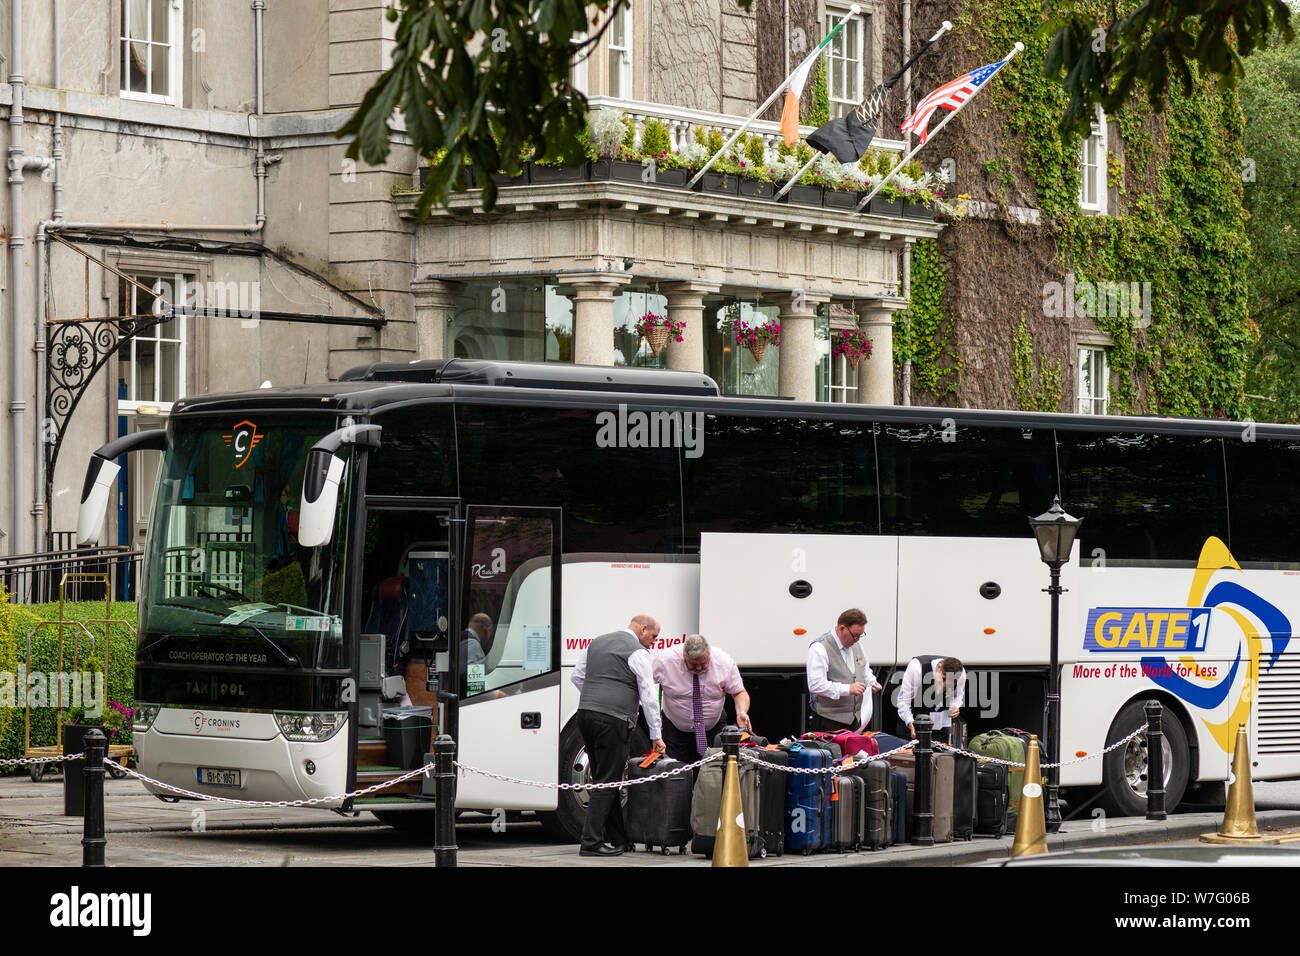 Hotelmitarbeiter laden einen Tourbus von Gate 1 im Great Western Hotel oder ab Malton in Killarney, County Kerry, Irland, aus. Stockfoto